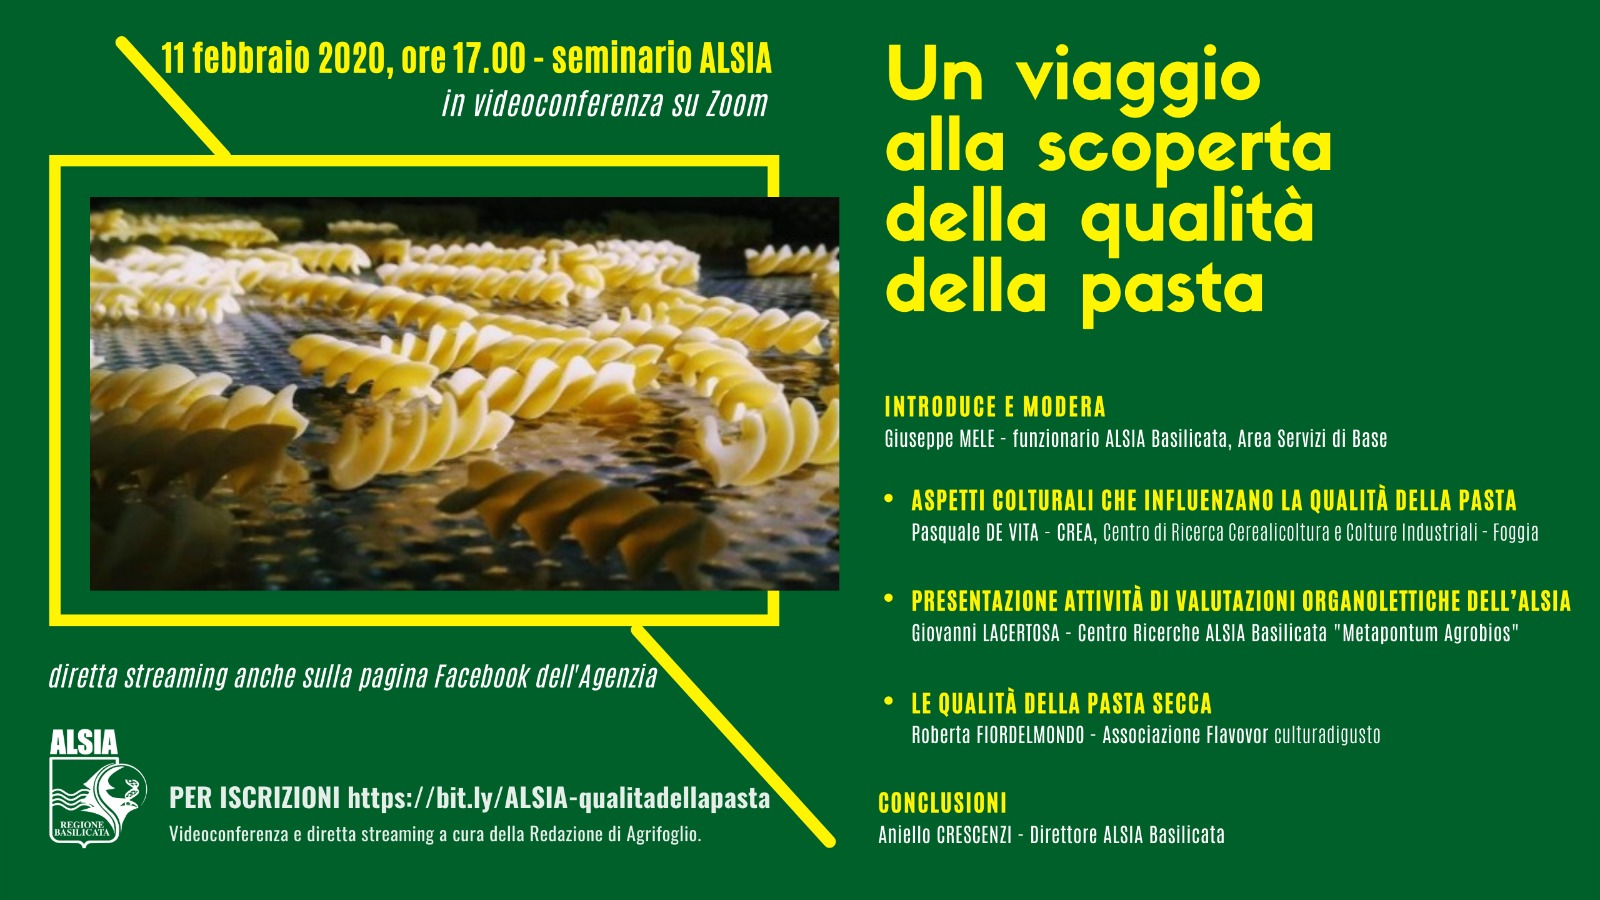 “Un viaggio alla scoperta della qualità della pasta”: l’11 seminario ALSIA in videoconferenza